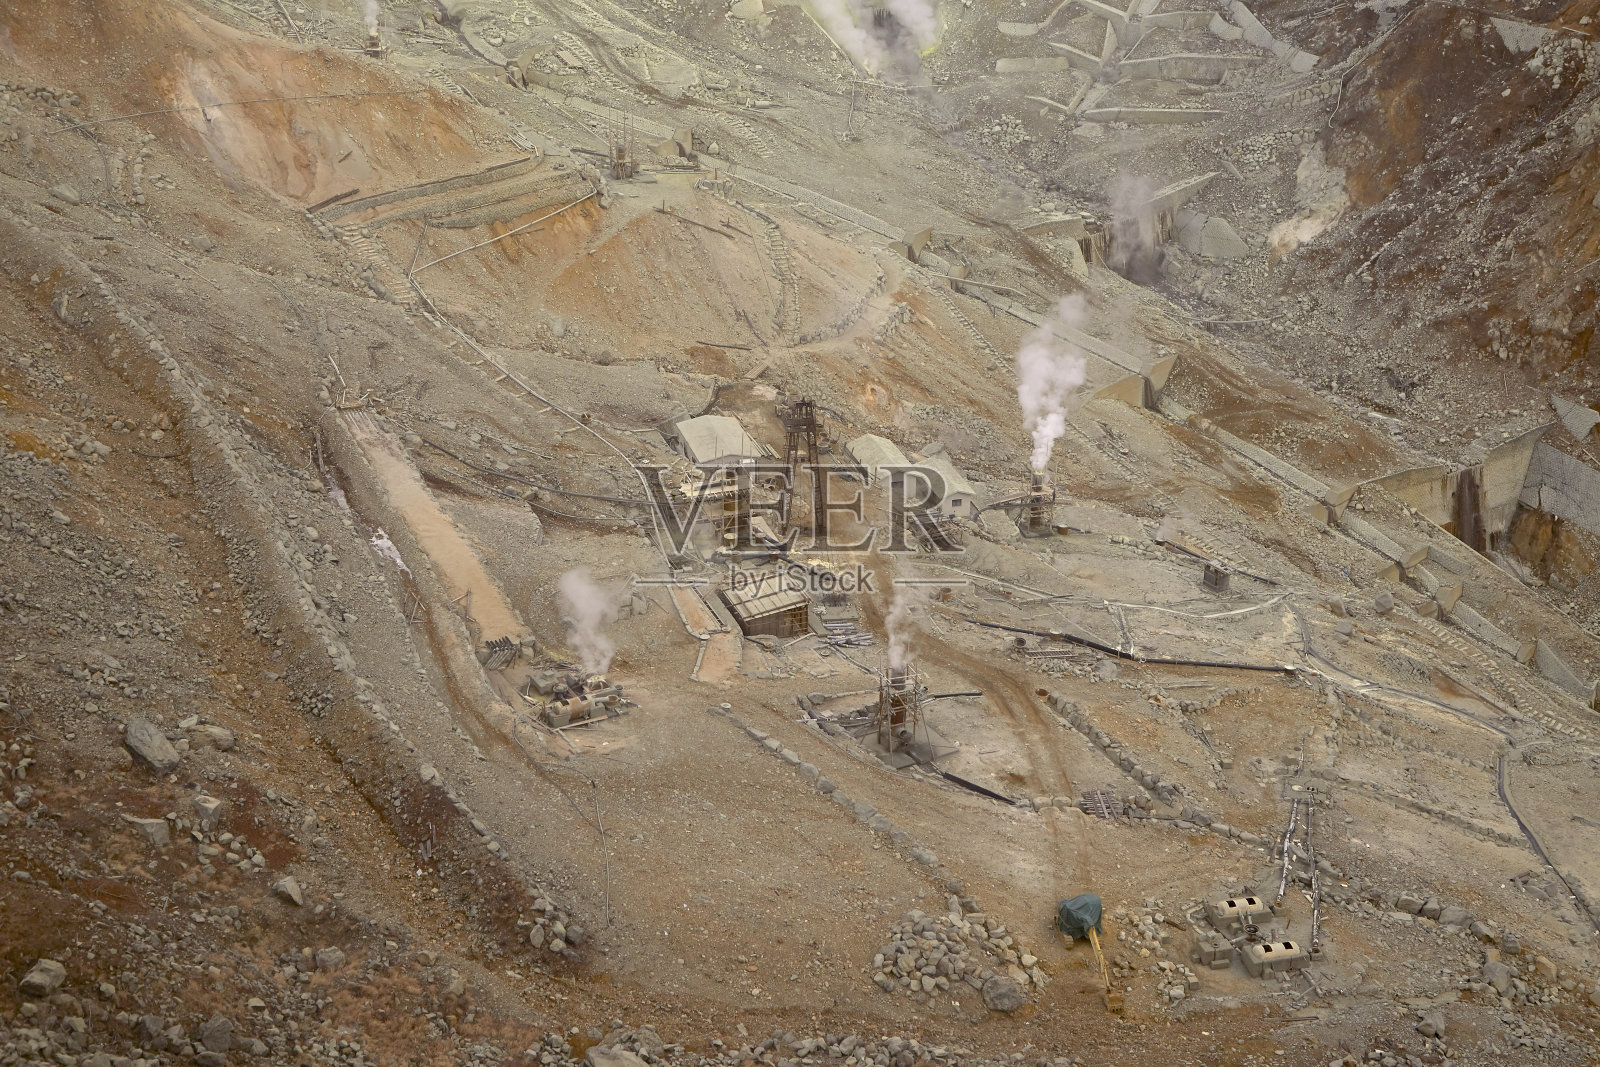 日本箱根硫磺采石场大浪谷山上的景色照片摄影图片